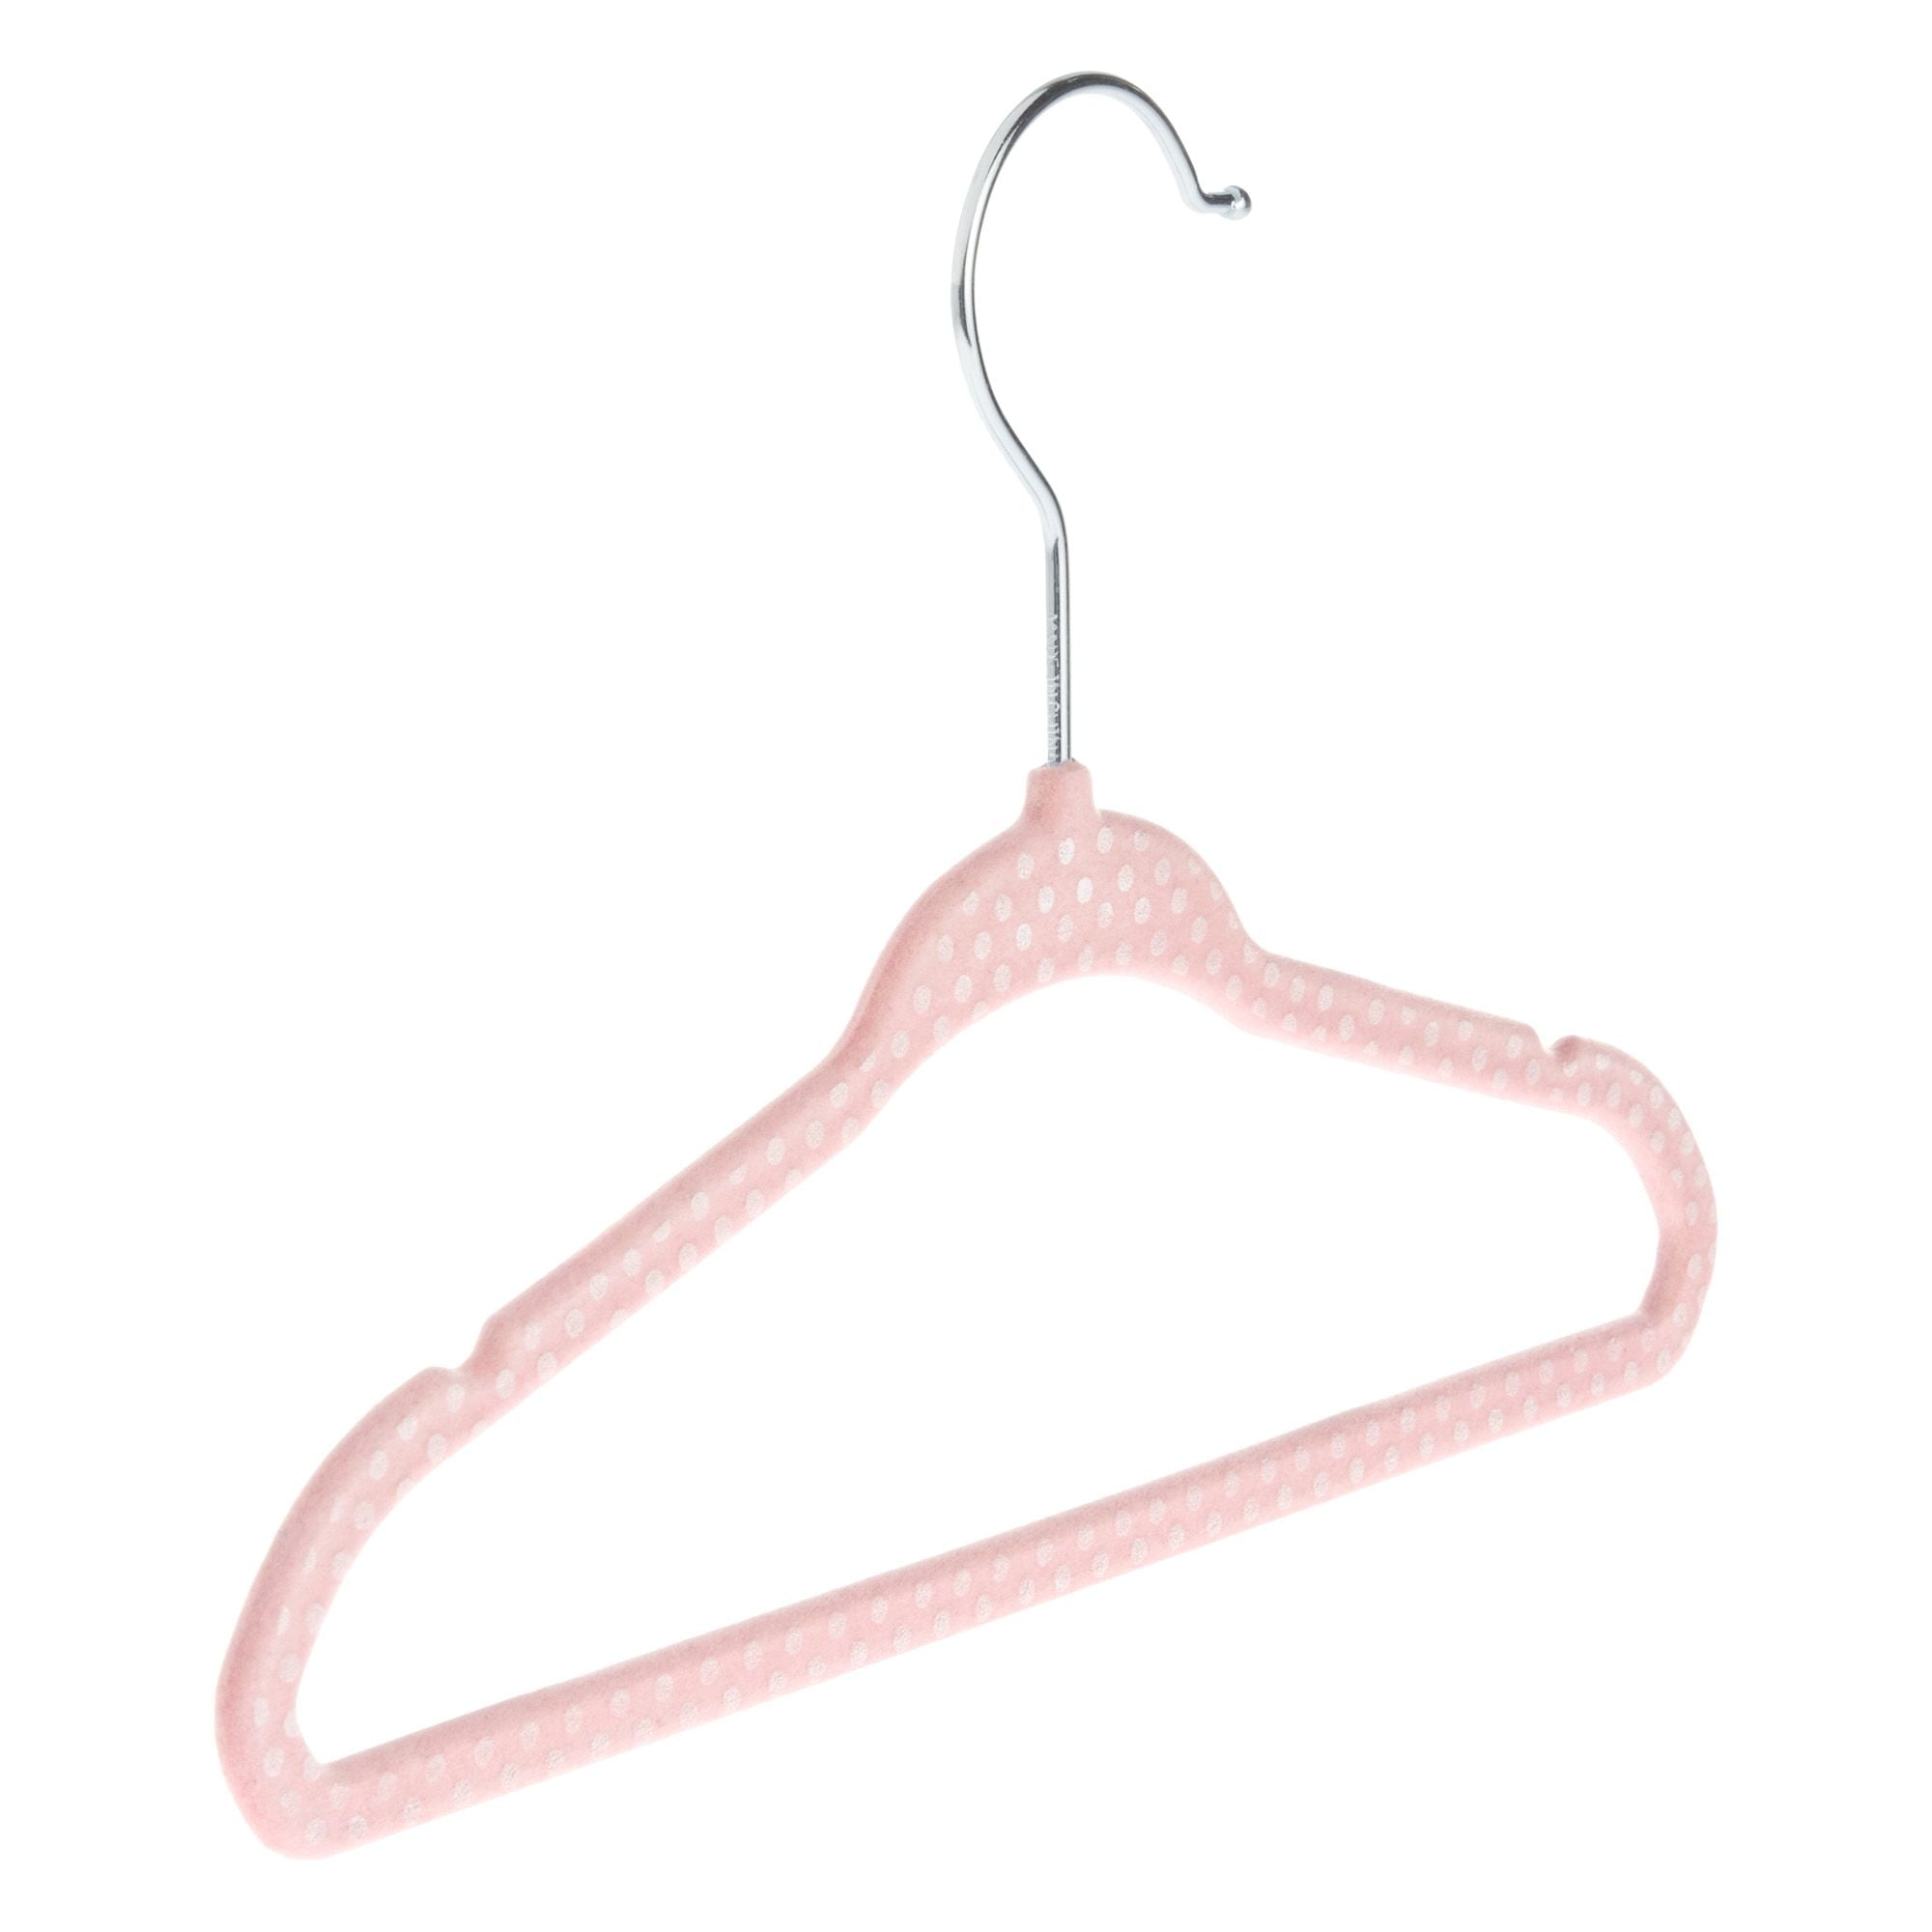 Velvet Baby Hangers 50 Pack,Premium Children's Hangers for Baby& toddler, Purple